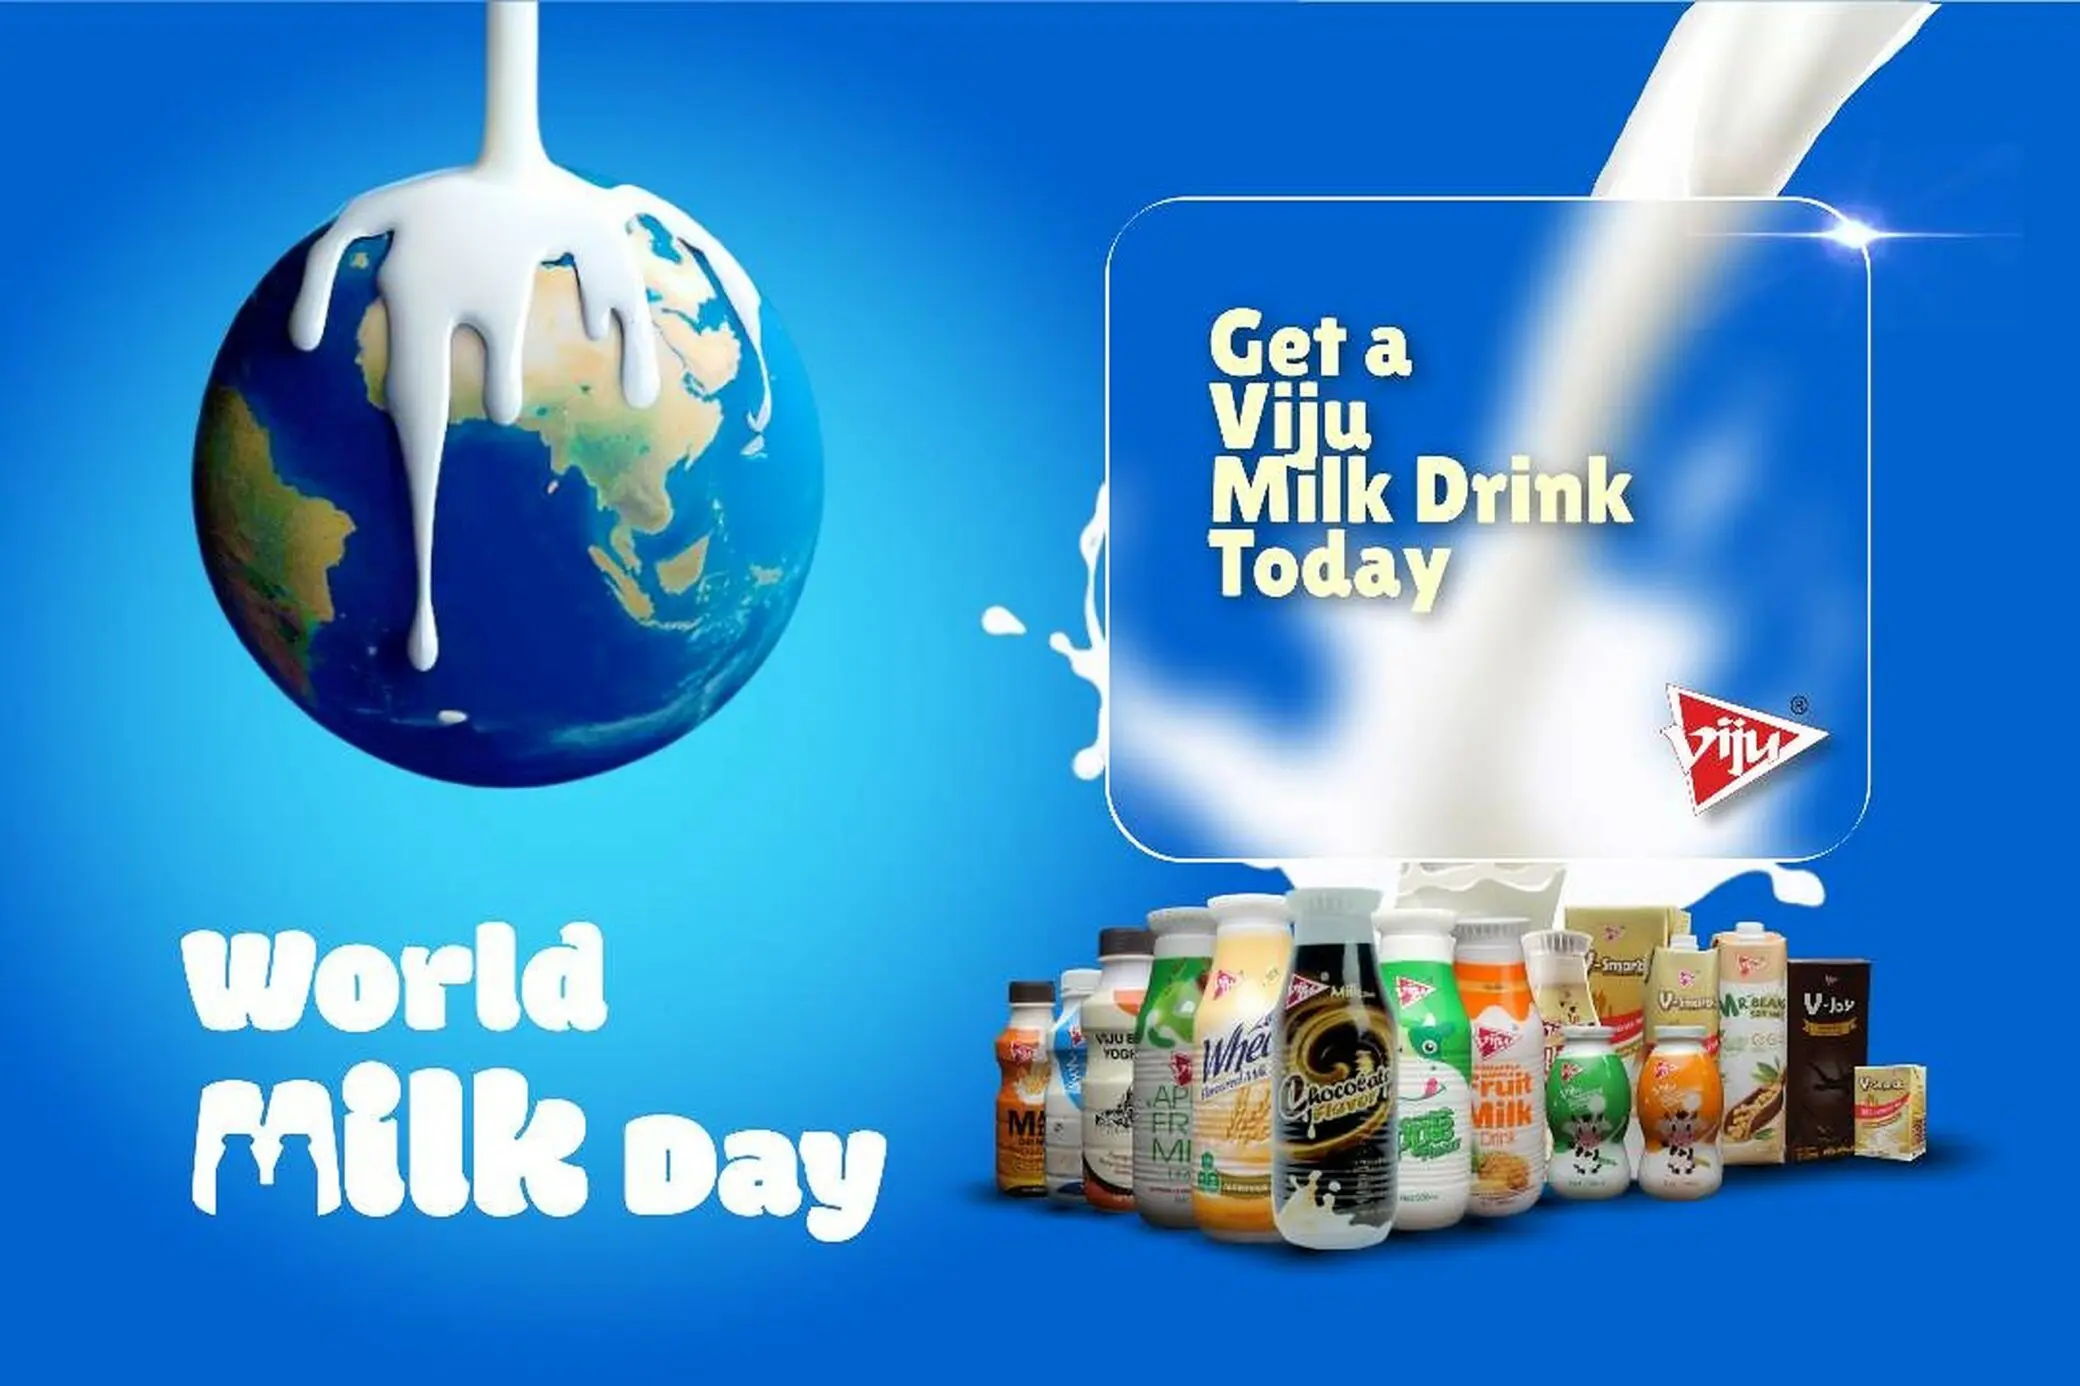 Viju Milk Drink Exemplifies Spirit of World Milk Day By Promoting Consumption of Milk